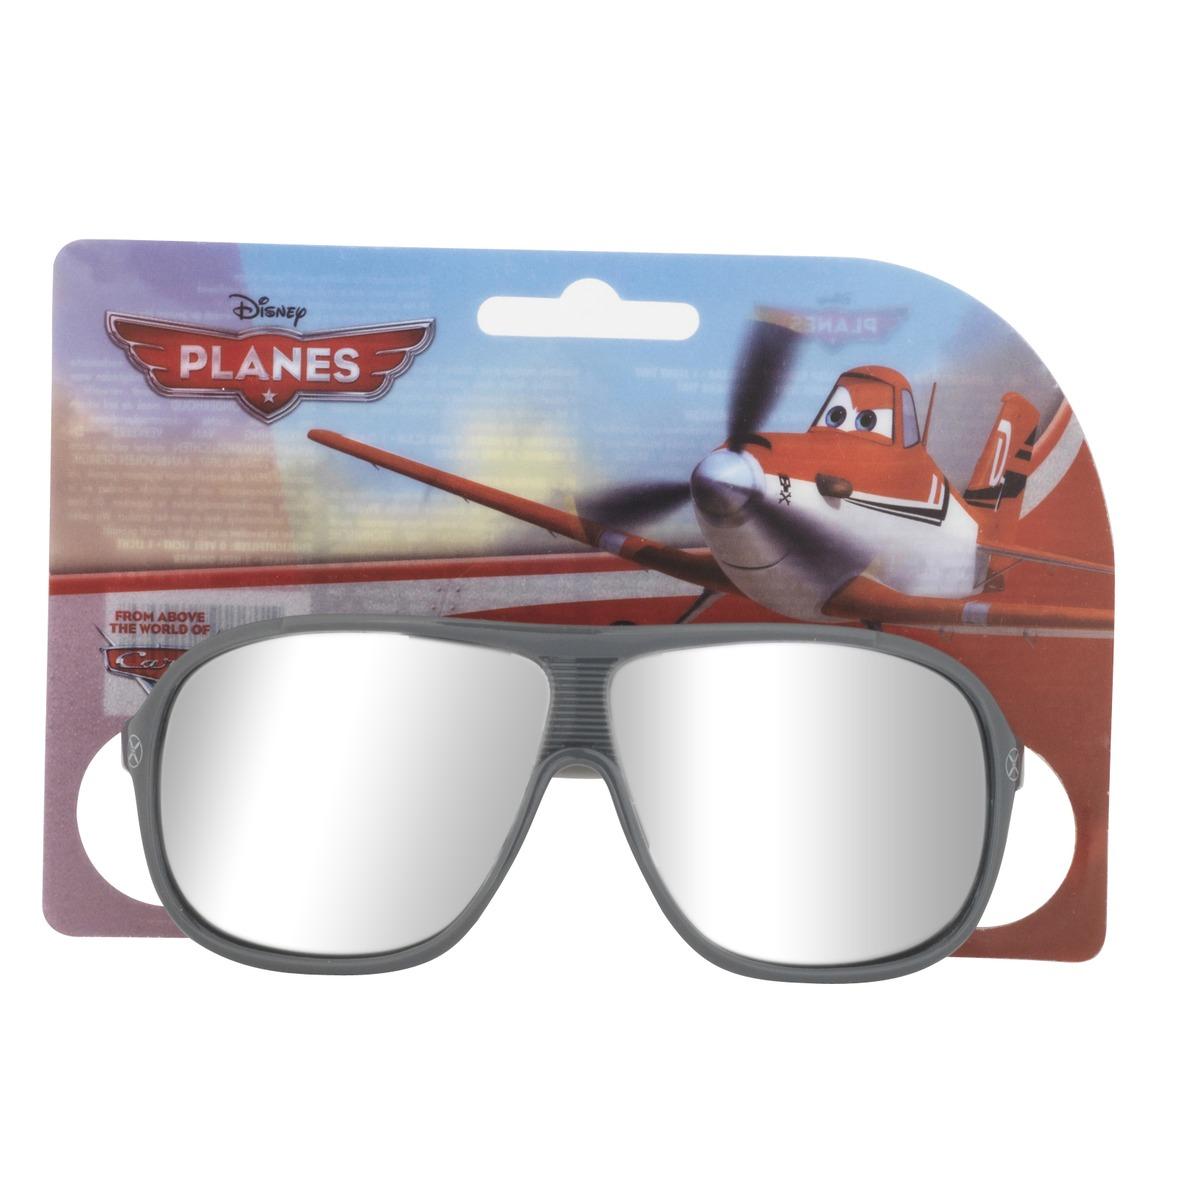 La paire de lunettes de soleil Planes plastique - Multicolore